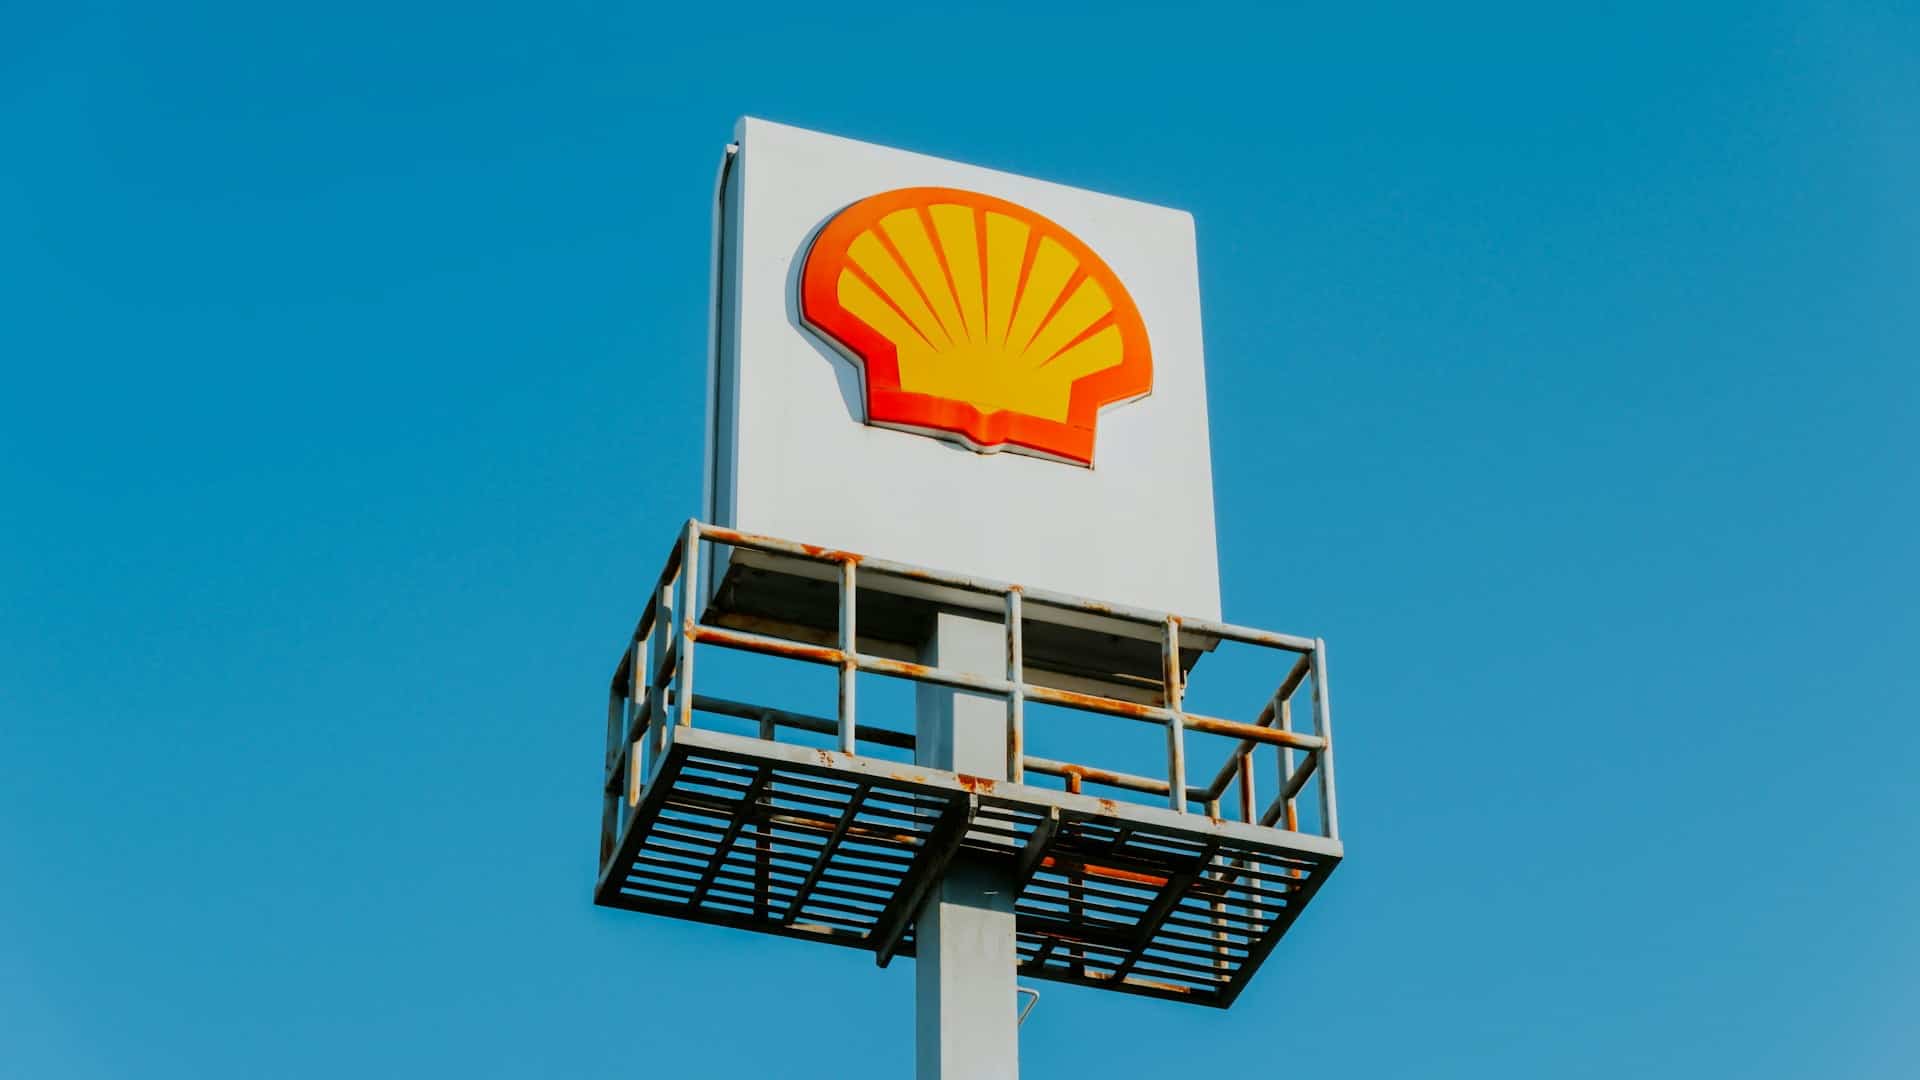 Shell espera licença dos EUA para prosseguir com projeto de gás natural. (Foto: Jethro Petrullo/Unsplash)